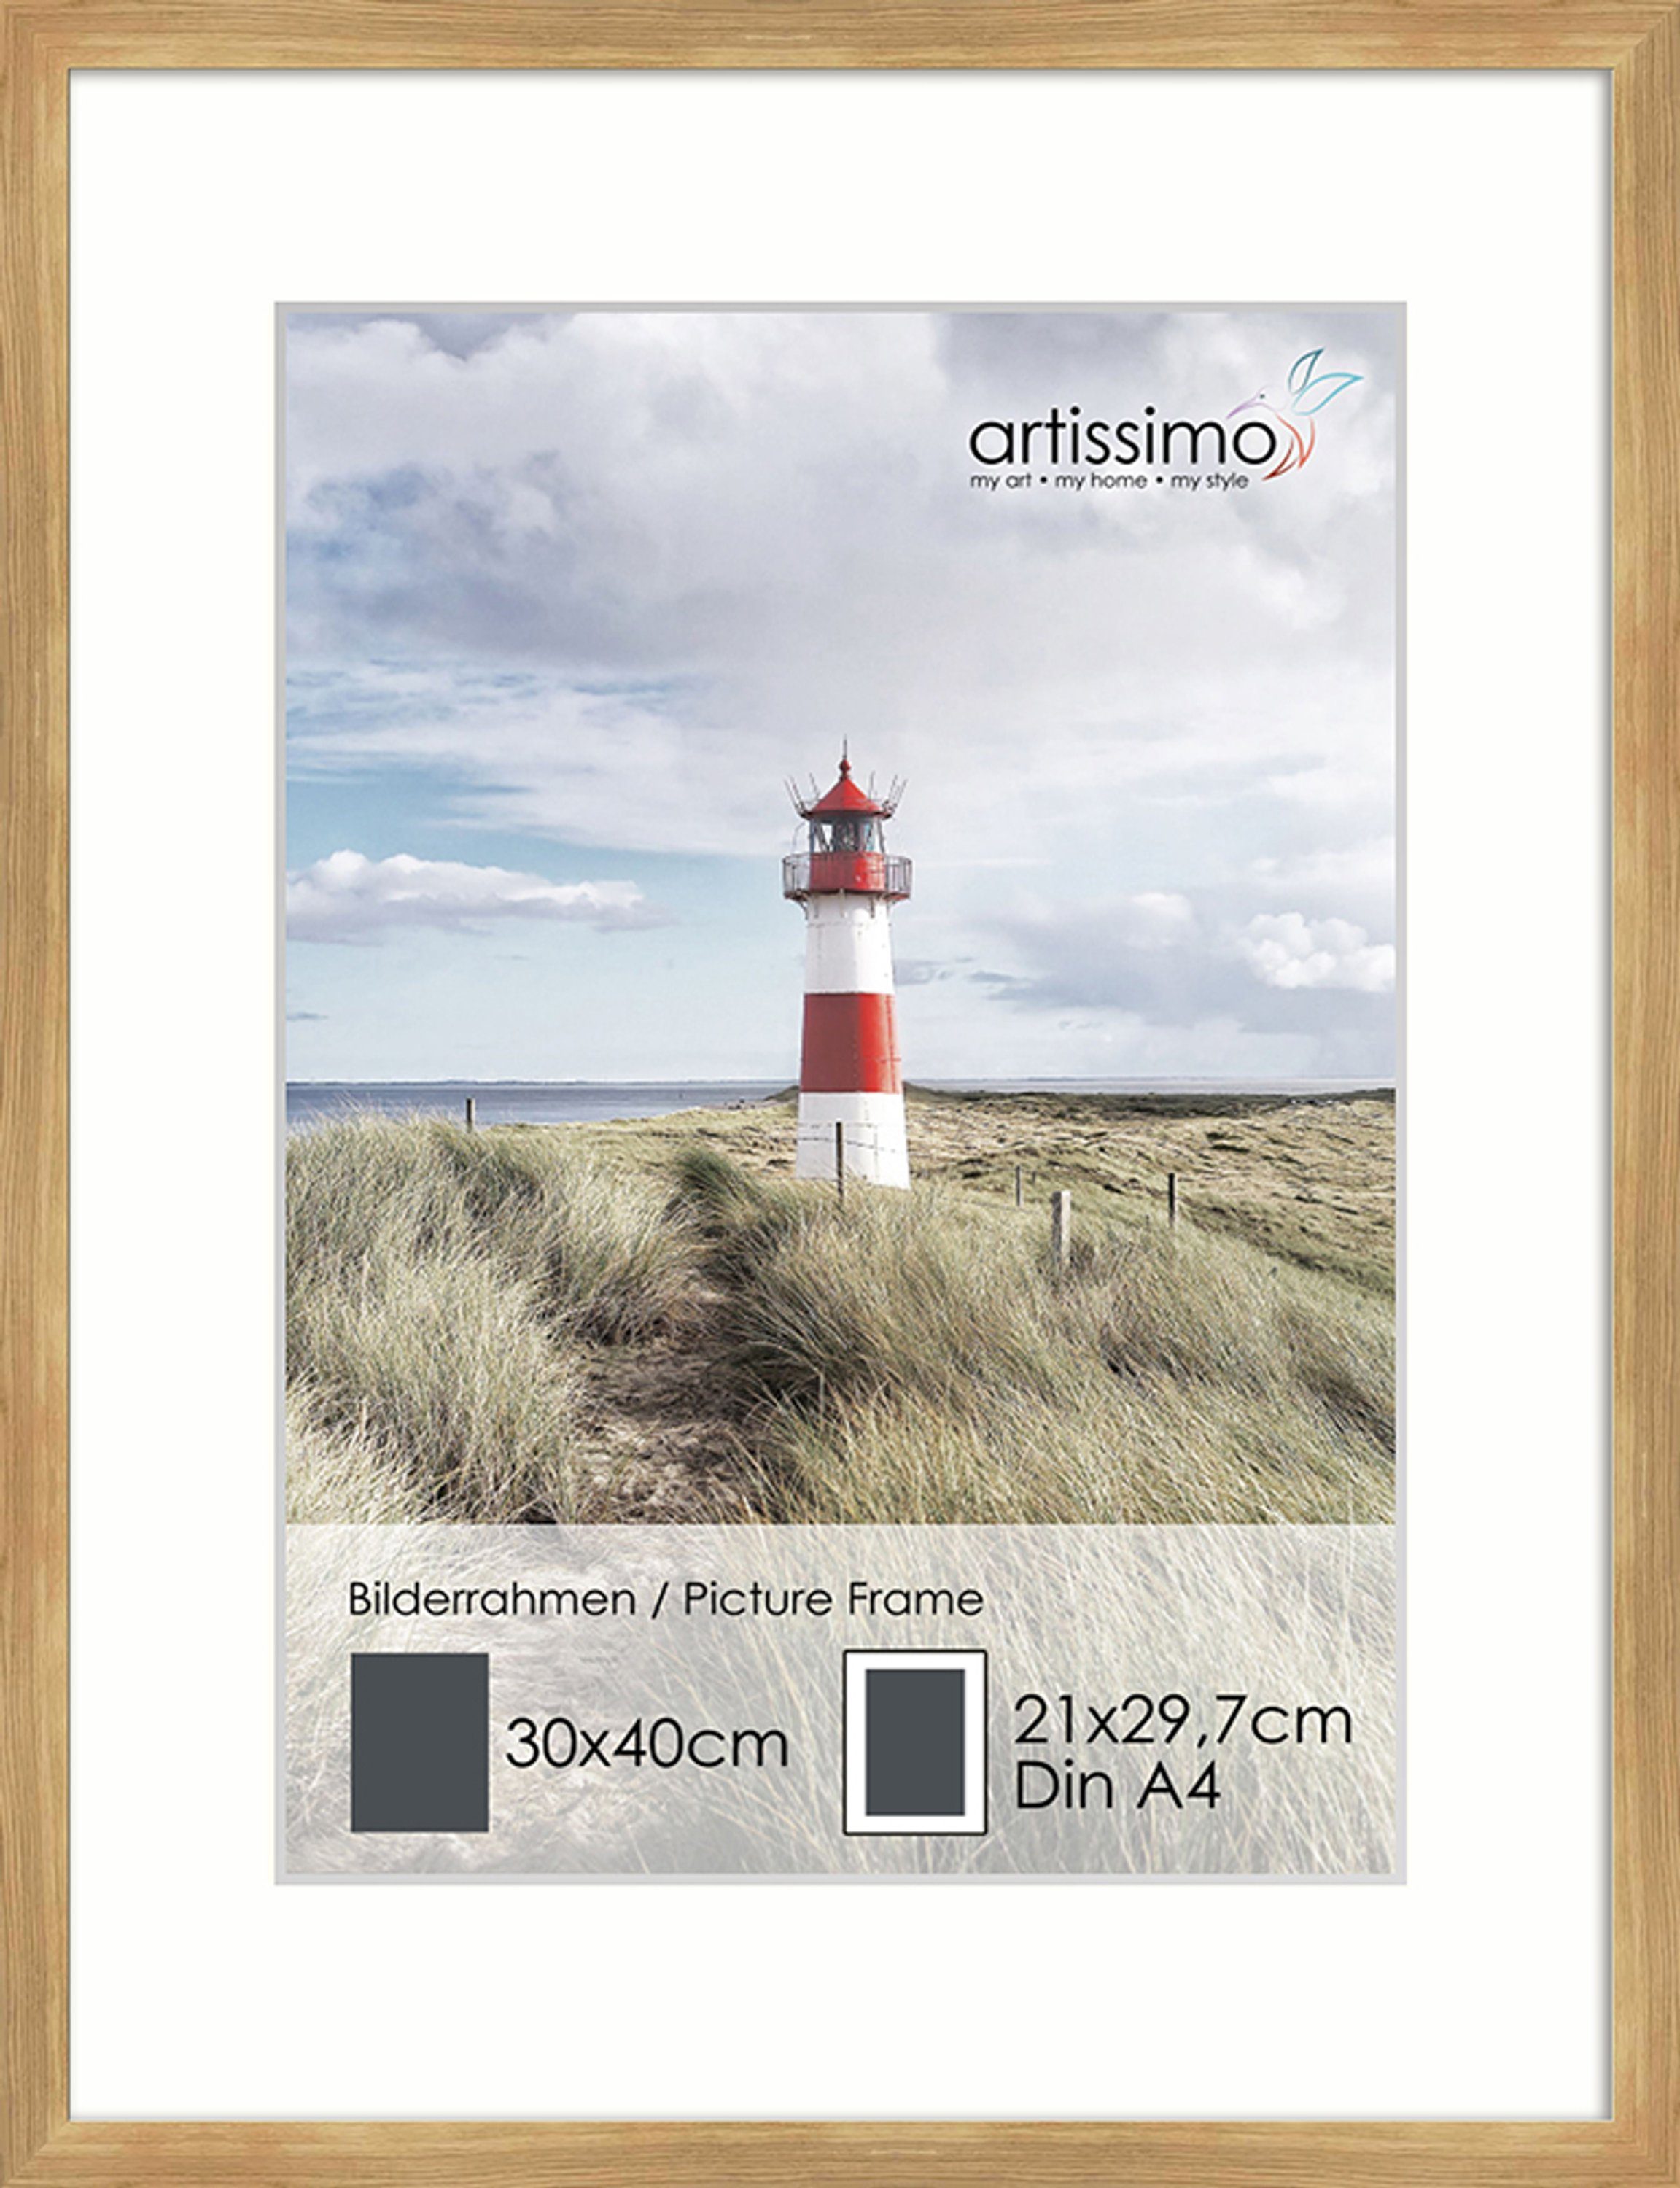 artissimo Bilderleiste Bilder-Rahmen 30x40cm Passepartout für inkl. Holz Poster DinA4 Eiche